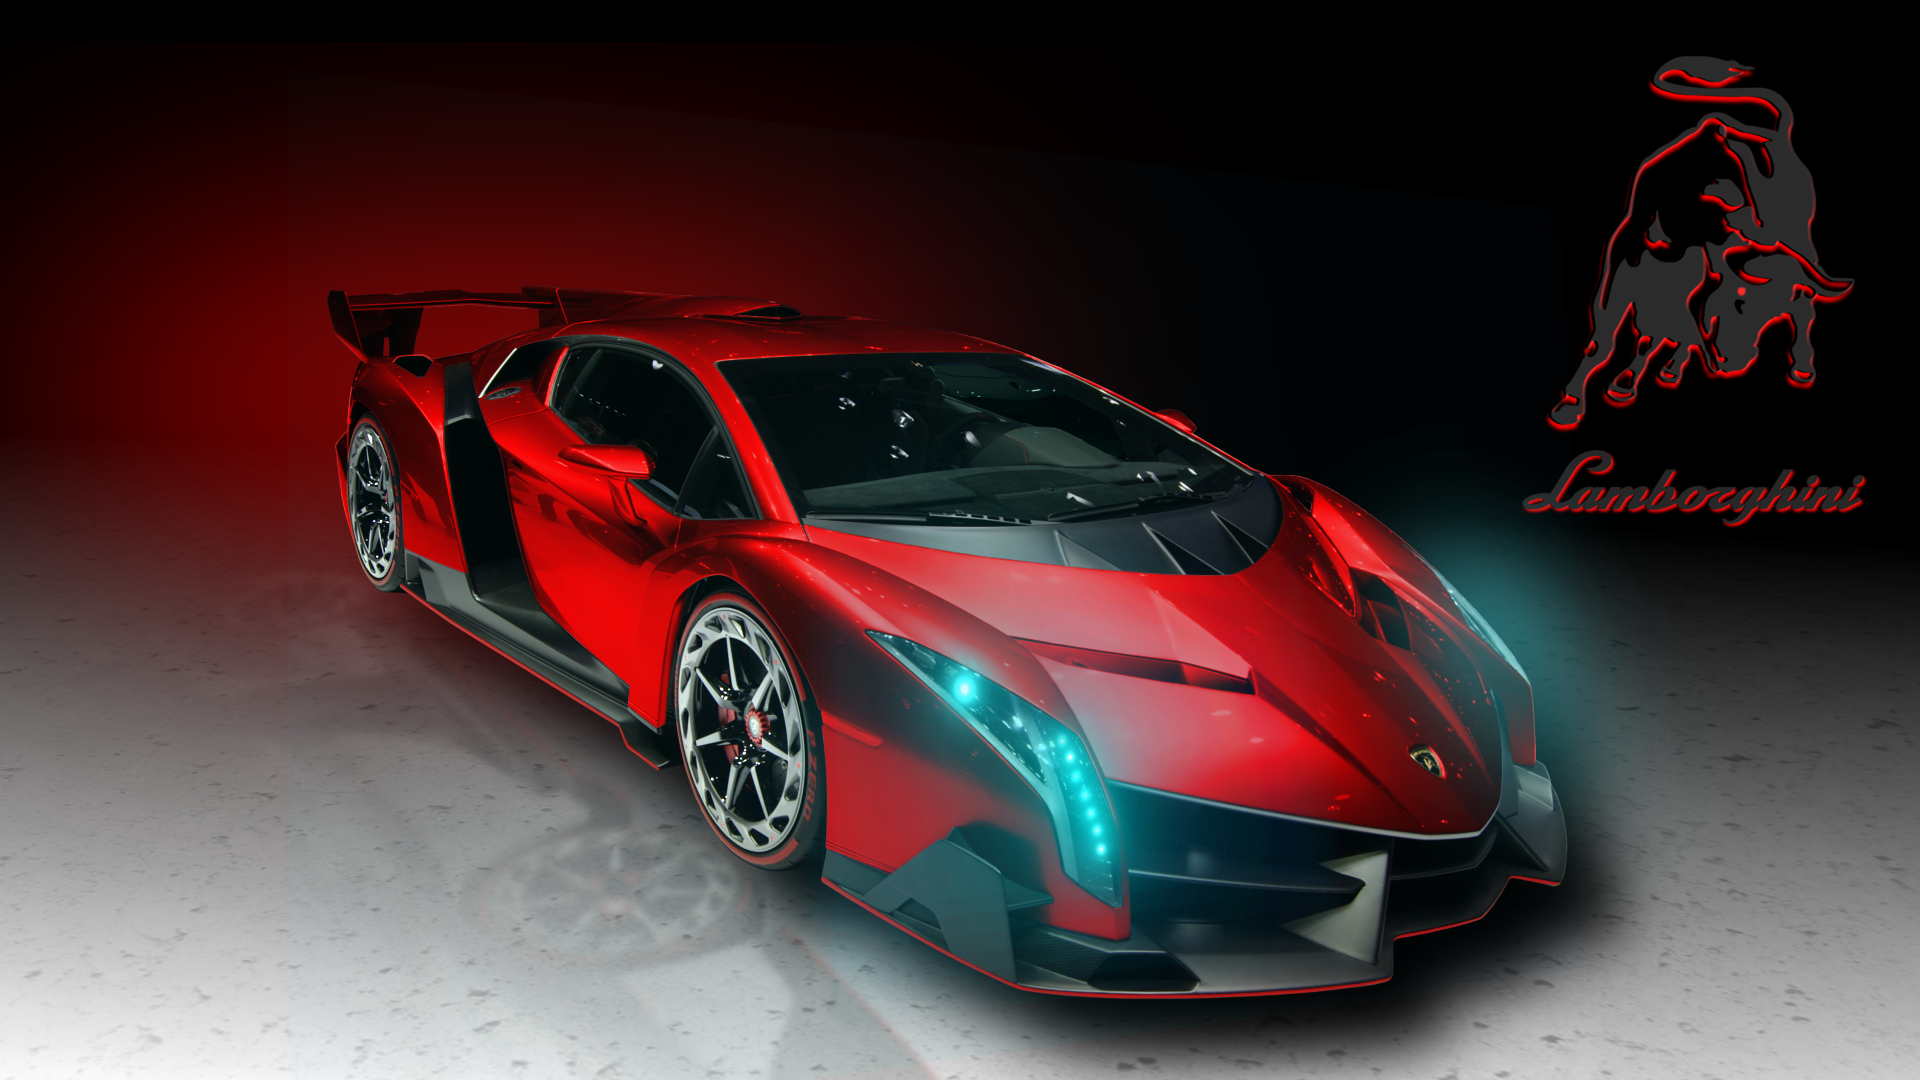 Lamborghini Veneno Hd Wallpaper For Android